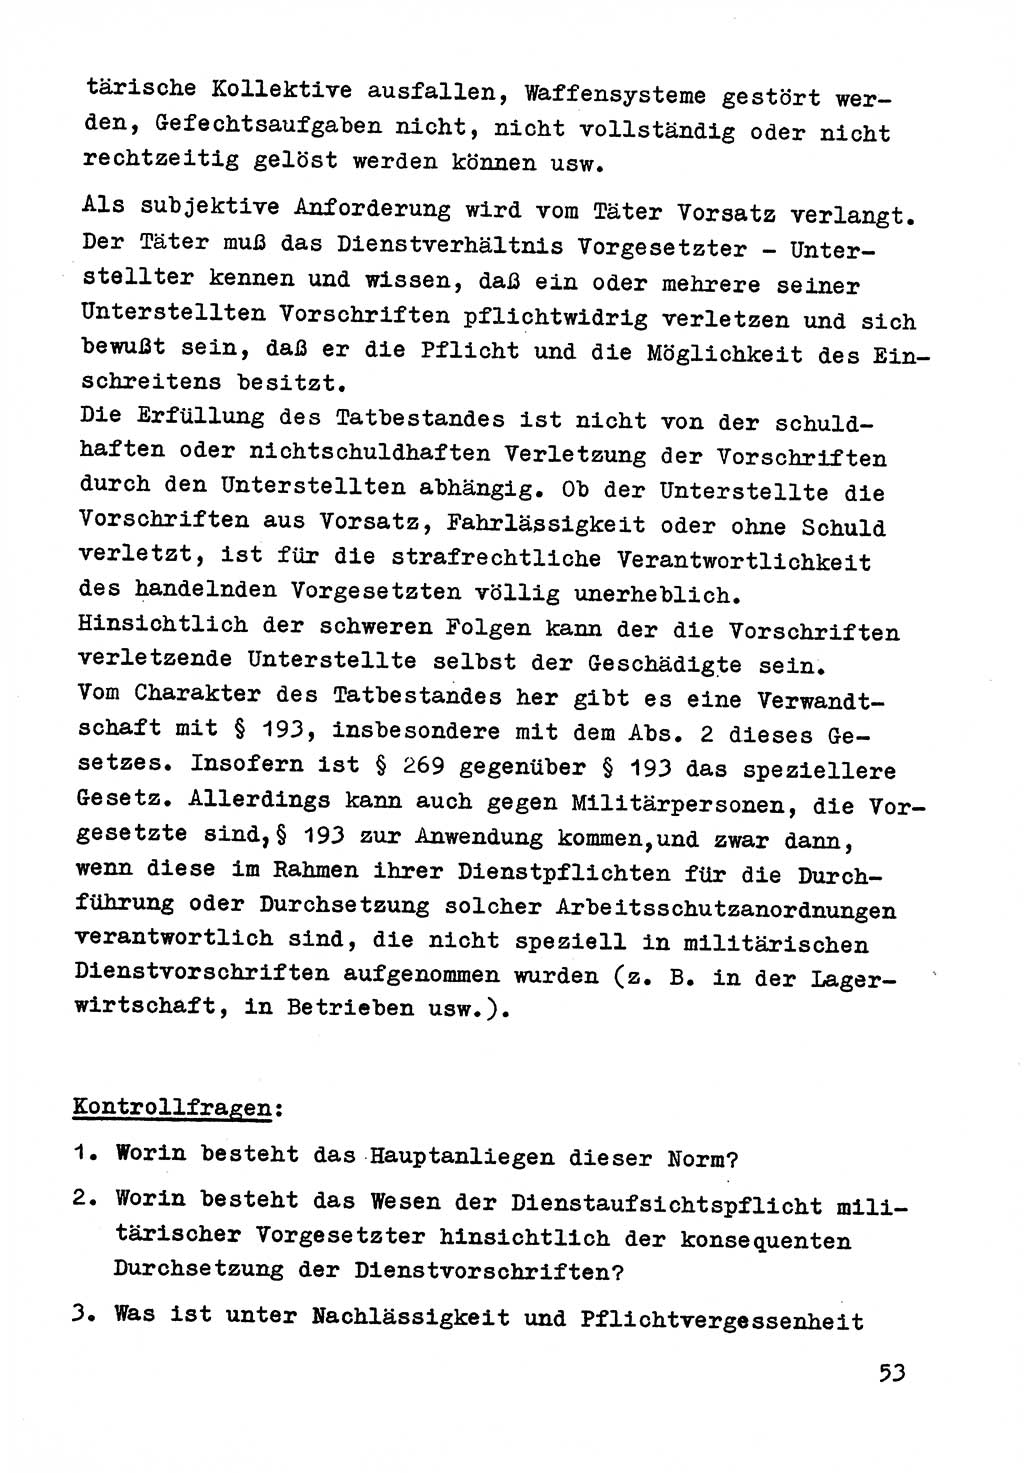 Strafrecht der DDR (Deutsche Demokratische Republik), Besonderer Teil, Lehrmaterial, Heft 9 1969, Seite 53 (Strafr. DDR BT Lehrmat. H. 9 1969, S. 53)